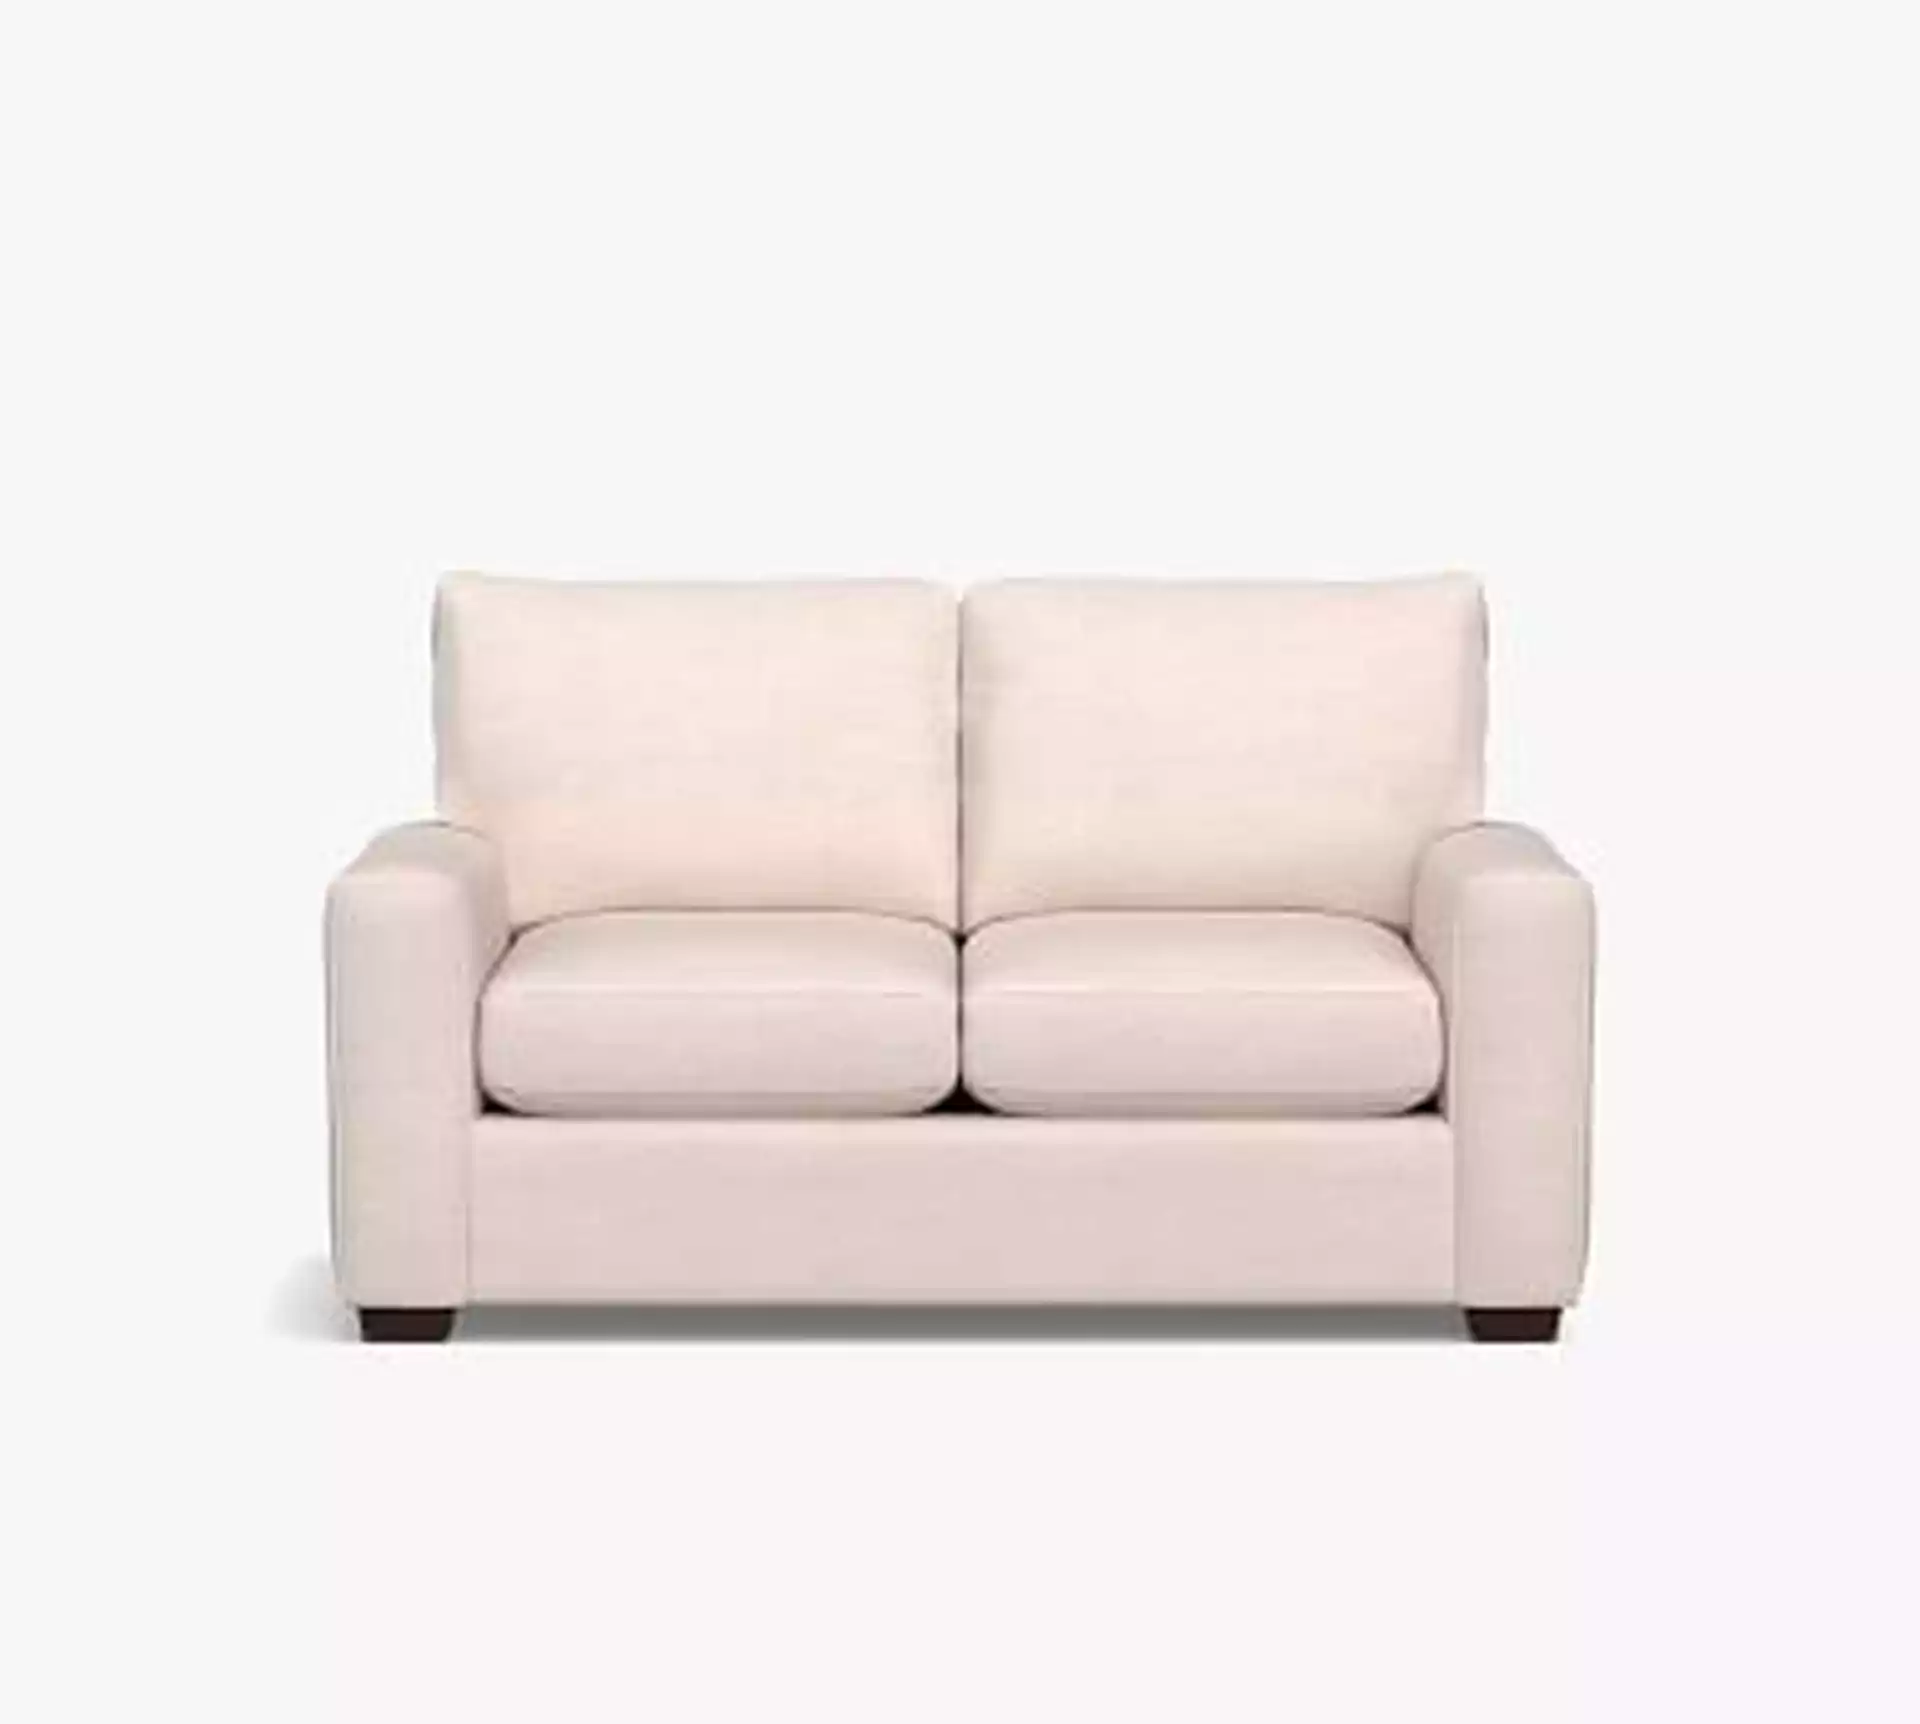 Pearce Modern Square Arm Upholstered Grand Sofa 84" Down Blend Wrapped Cushions, Performance Everydayvelvet(TM) Navy